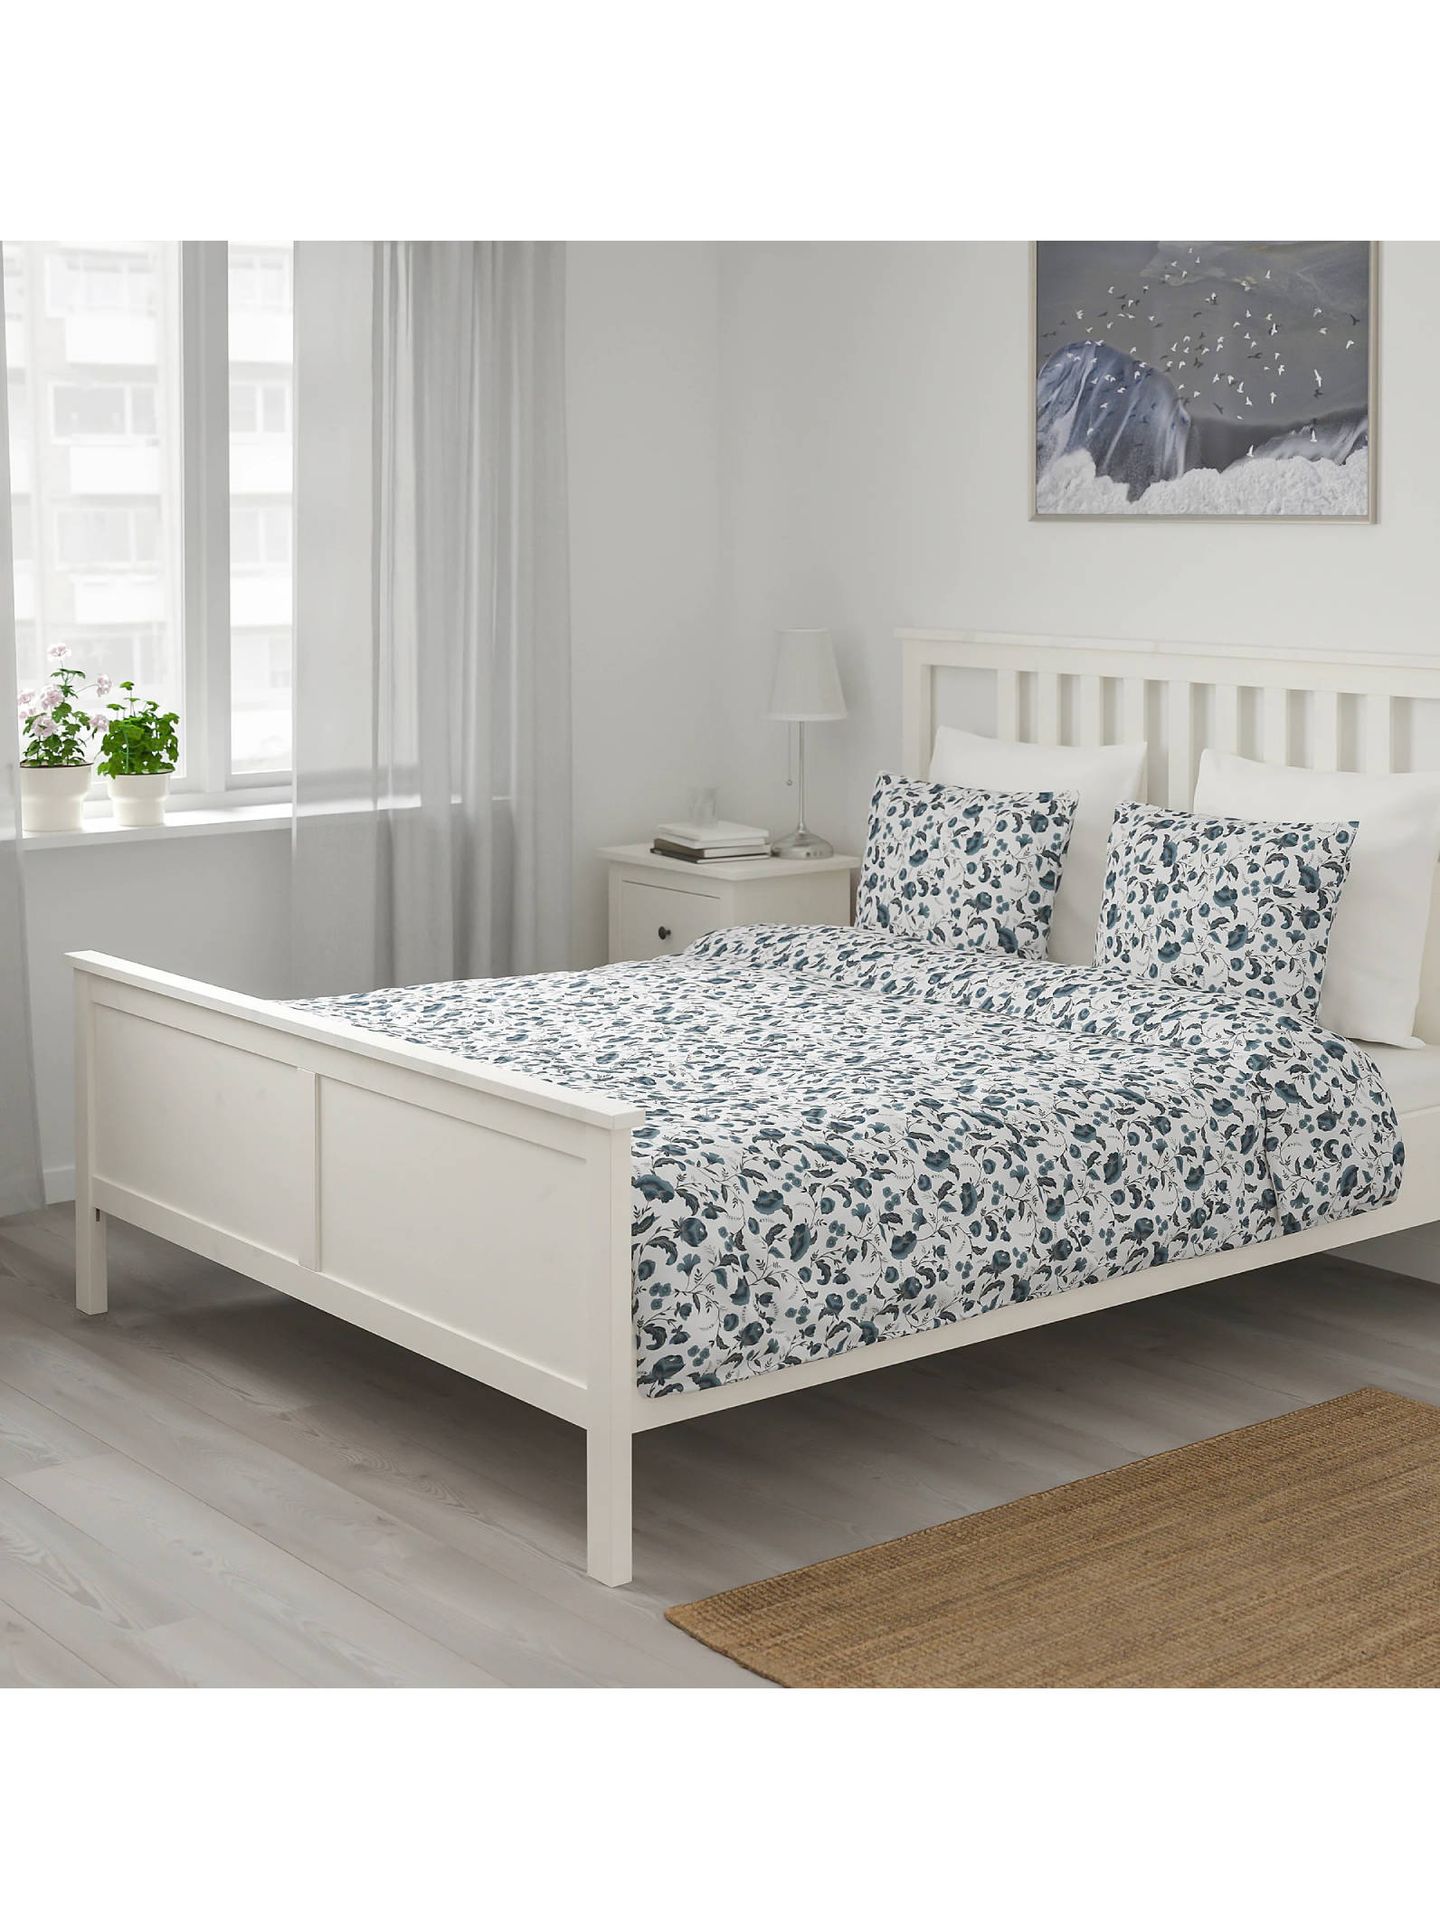 Fundas nórdicas de Ikea para tu dormitorio. (Cortesía)